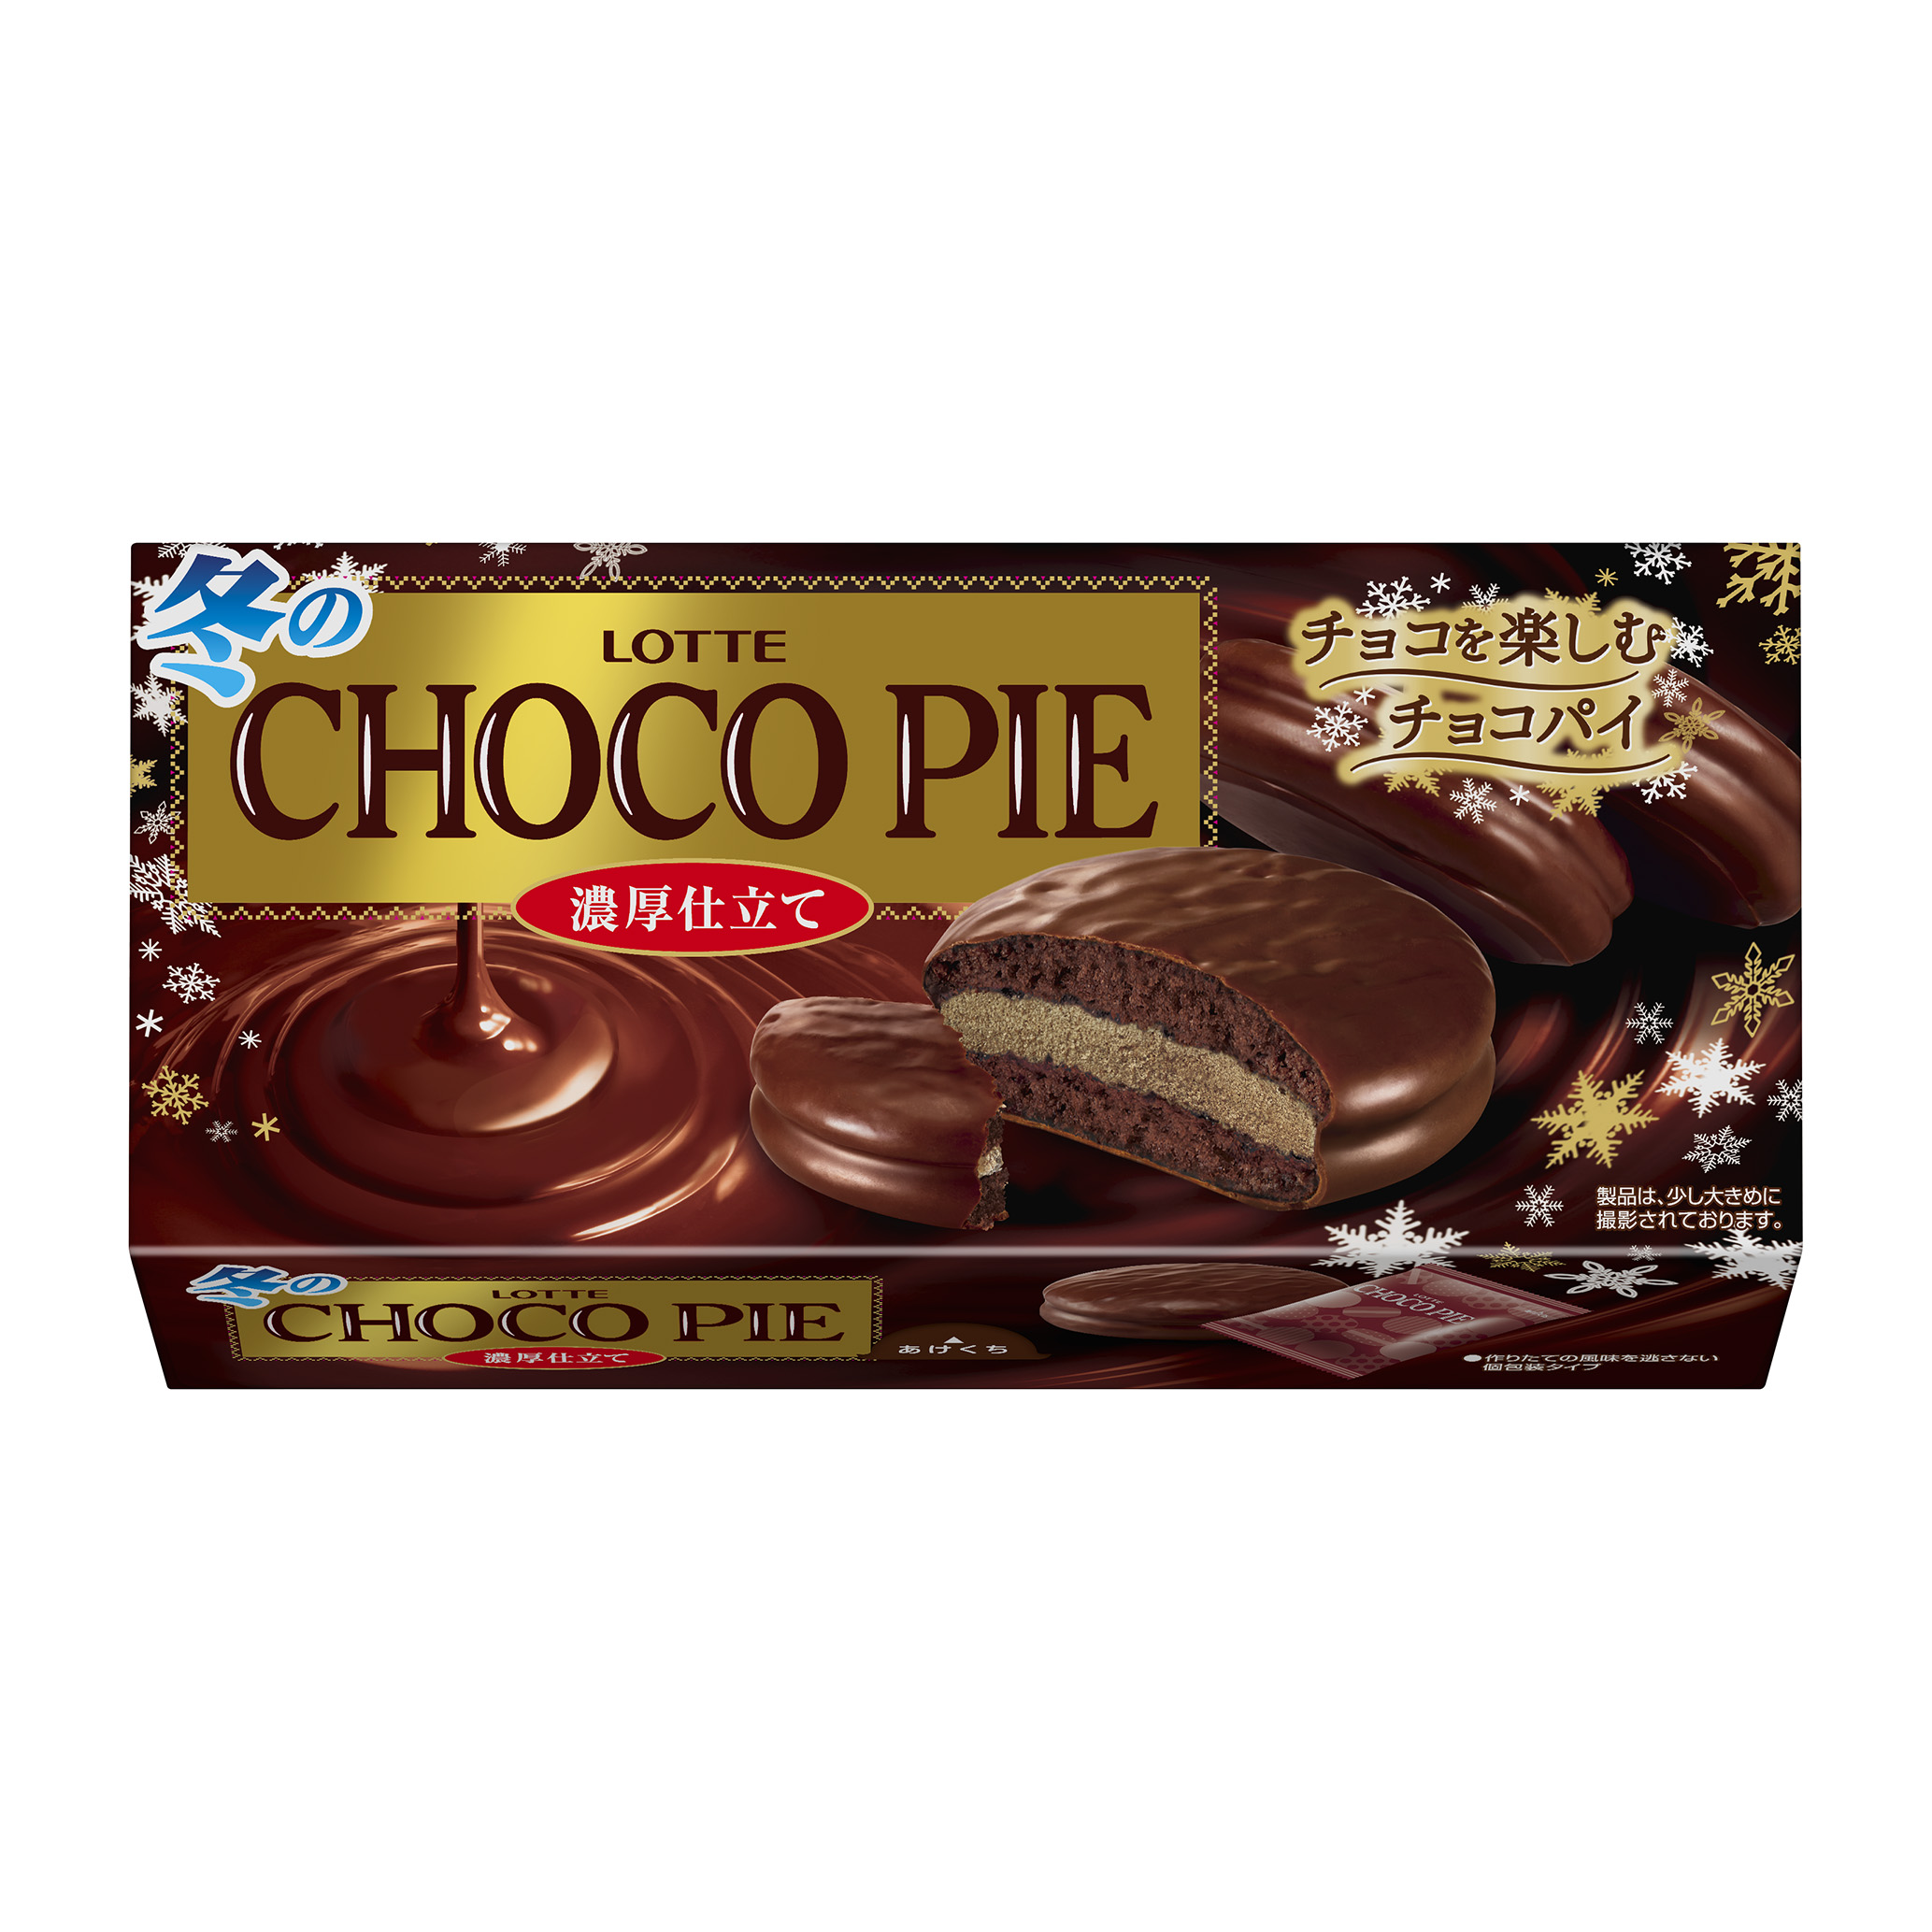 Чоко чанга. Чоко Пай шоколадные. Lotte Choco pie вкусы. Choco pie печенье в шоколадной. Печенье Lotte с шоколадом.